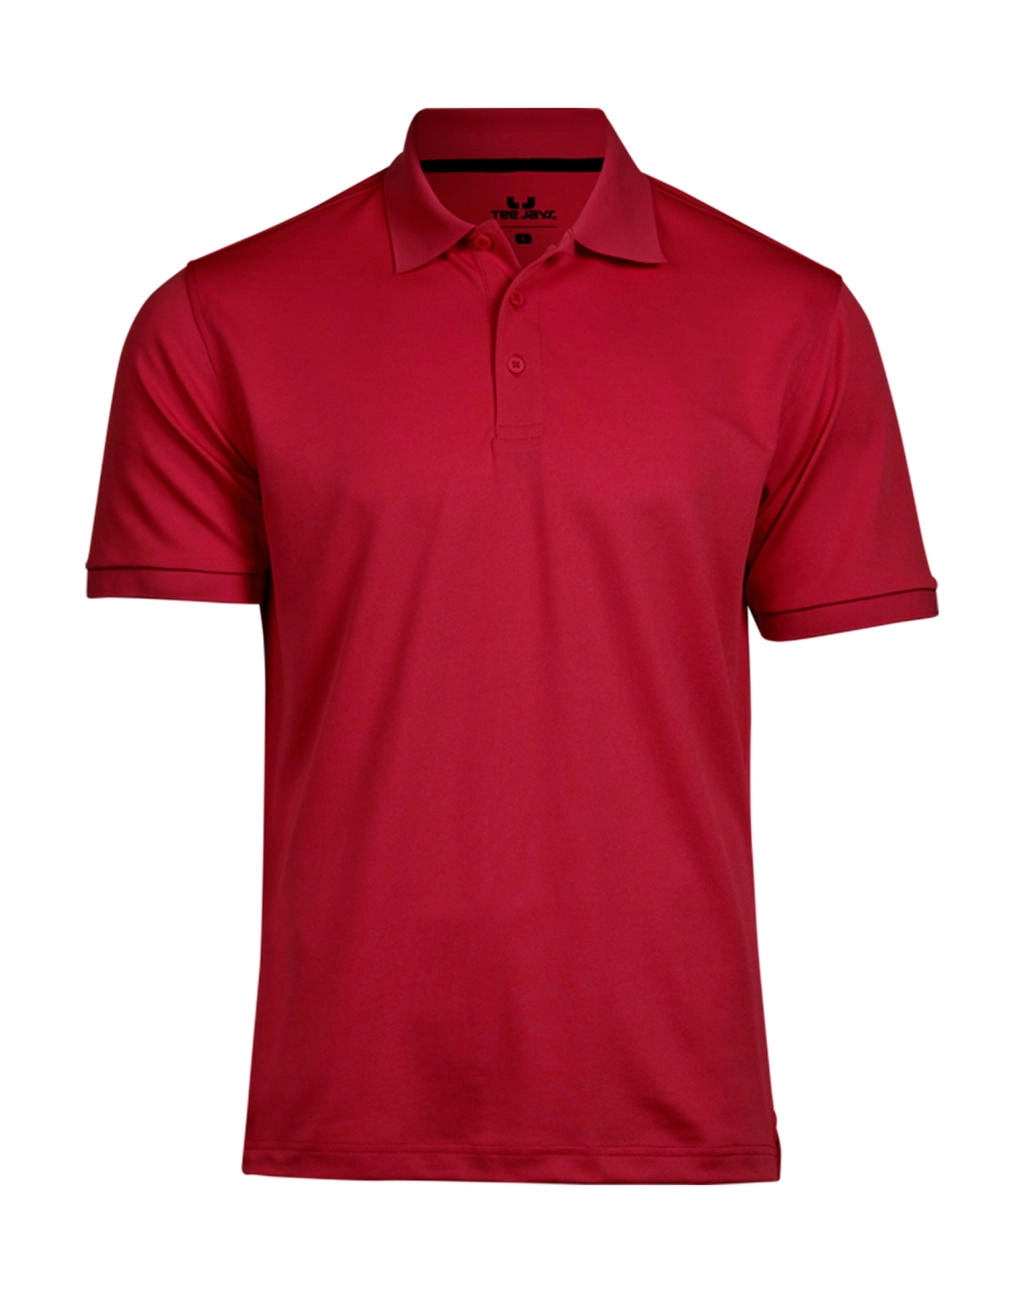 Club Polo zum Besticken und Bedrucken in der Farbe Red mit Ihren Logo, Schriftzug oder Motiv.